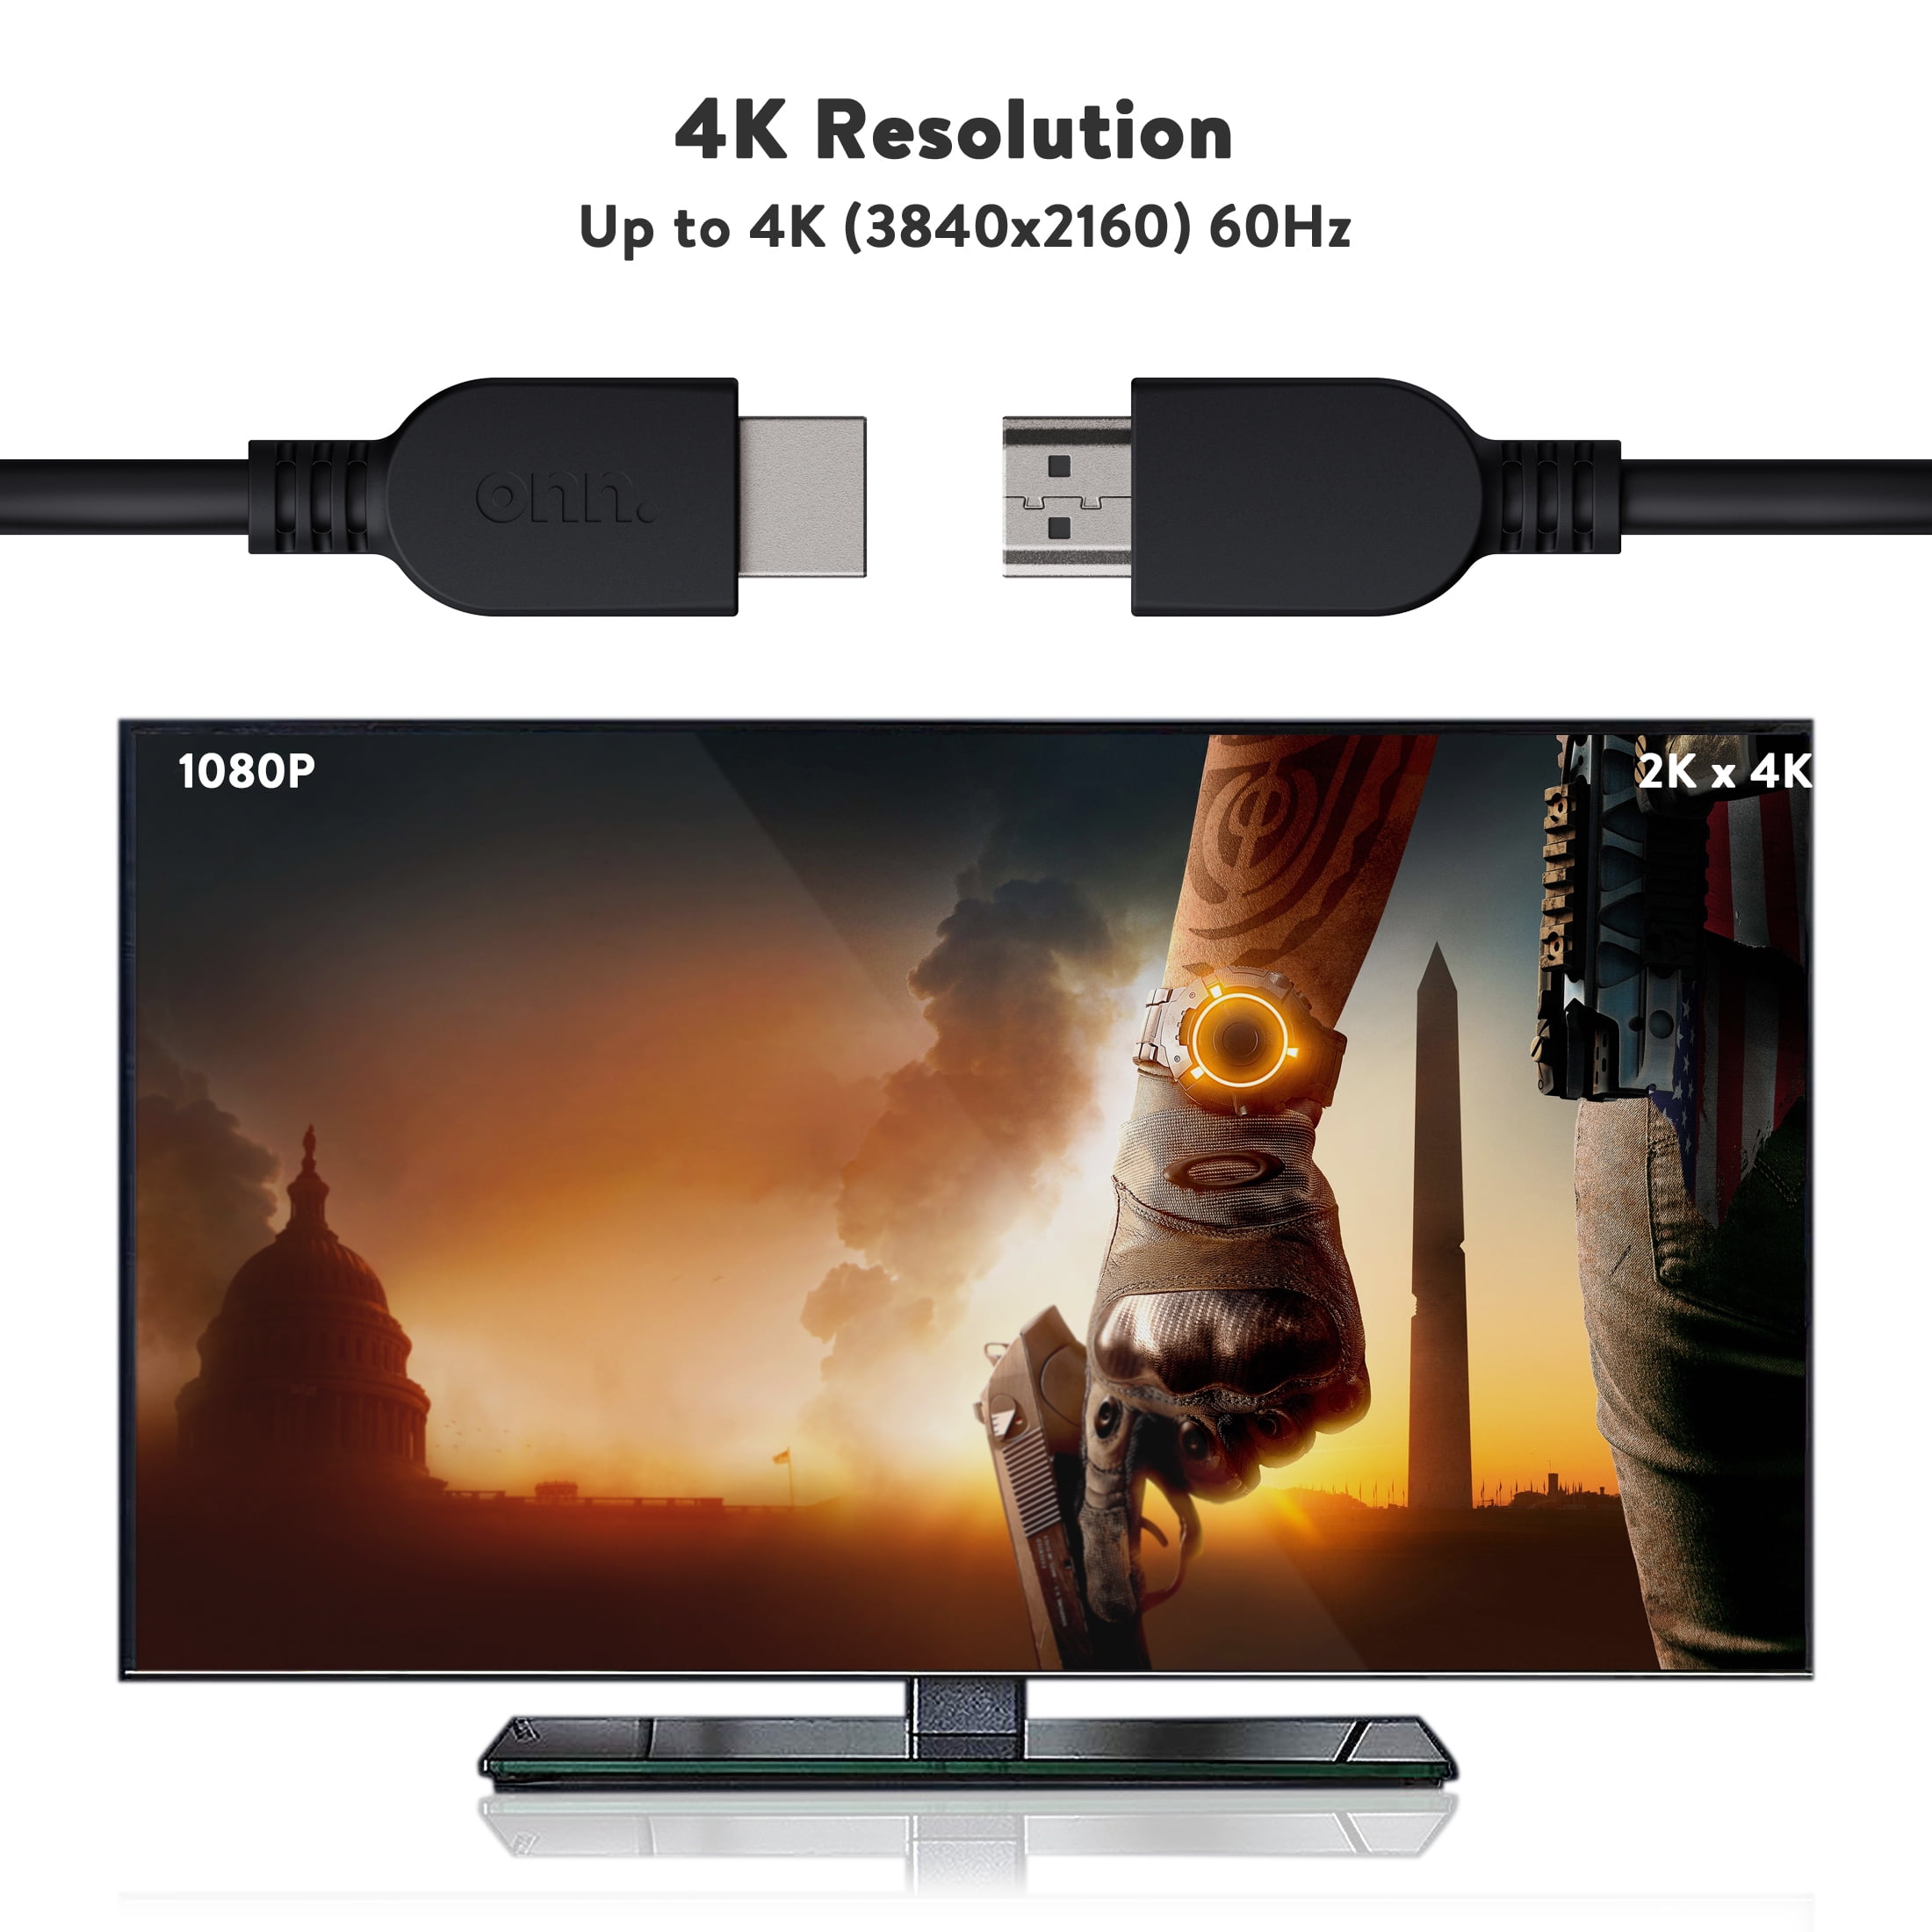 onn. 12' Premium HDMI Cable